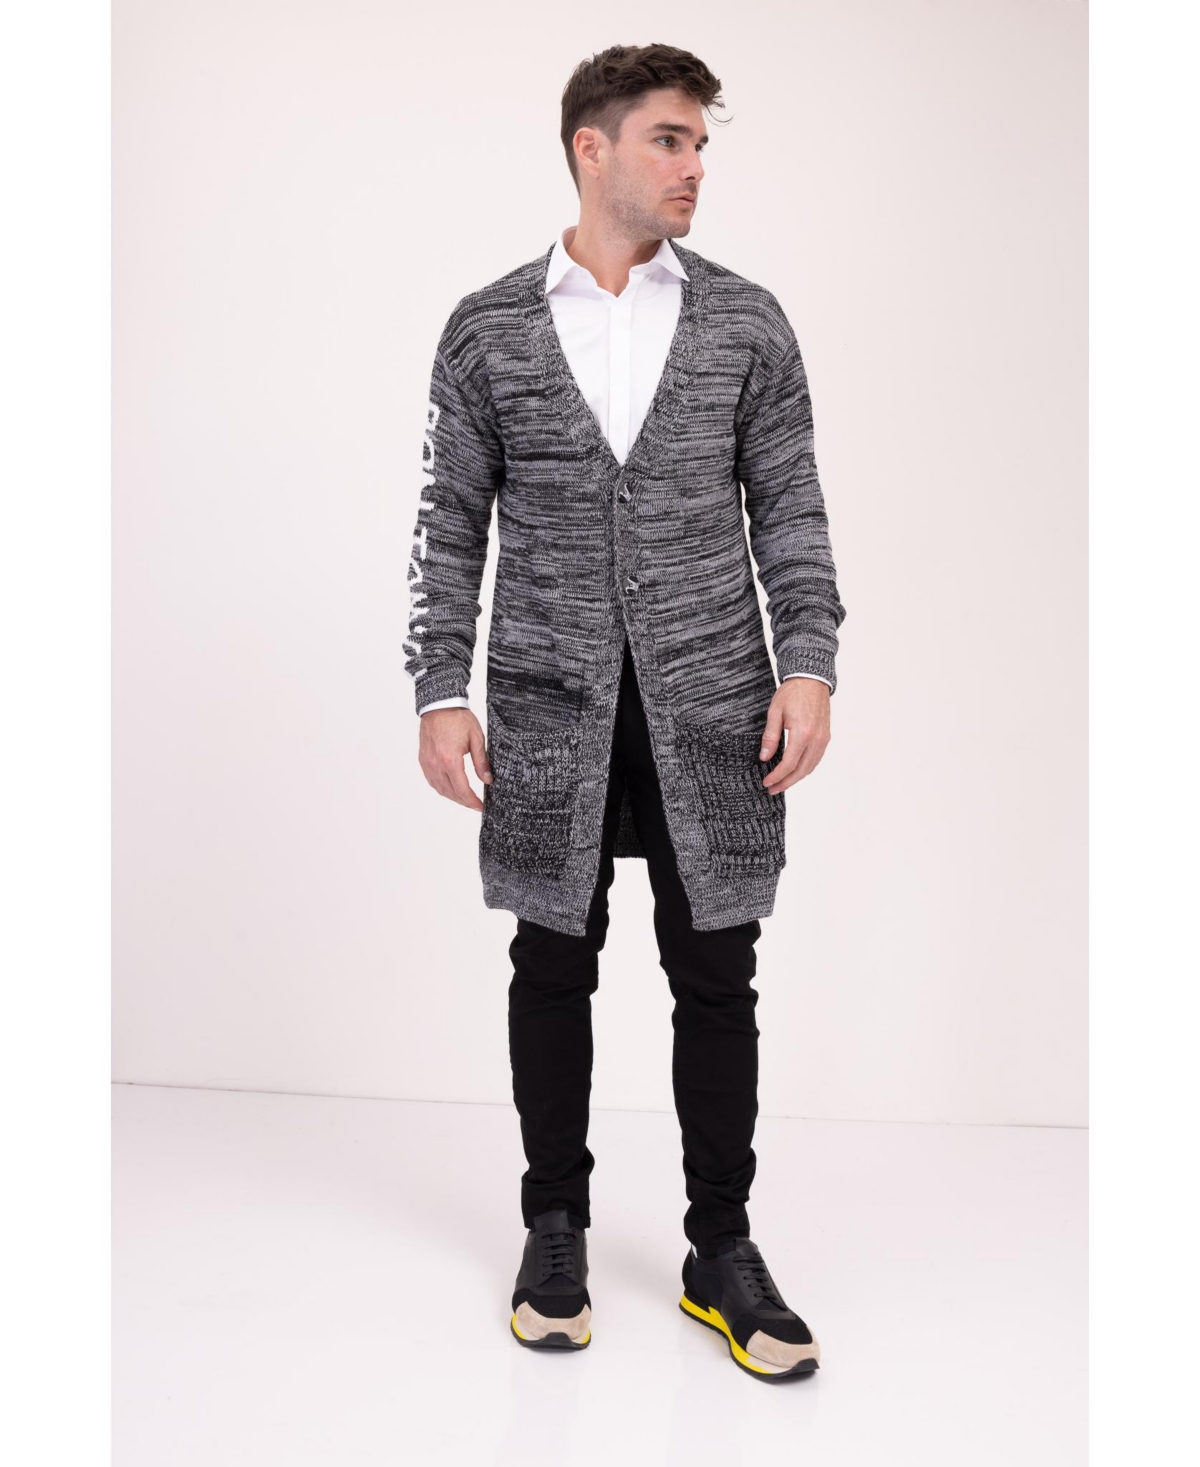 Men's Modern Dreamers Longline Cardigan Sweater - Black, Gray